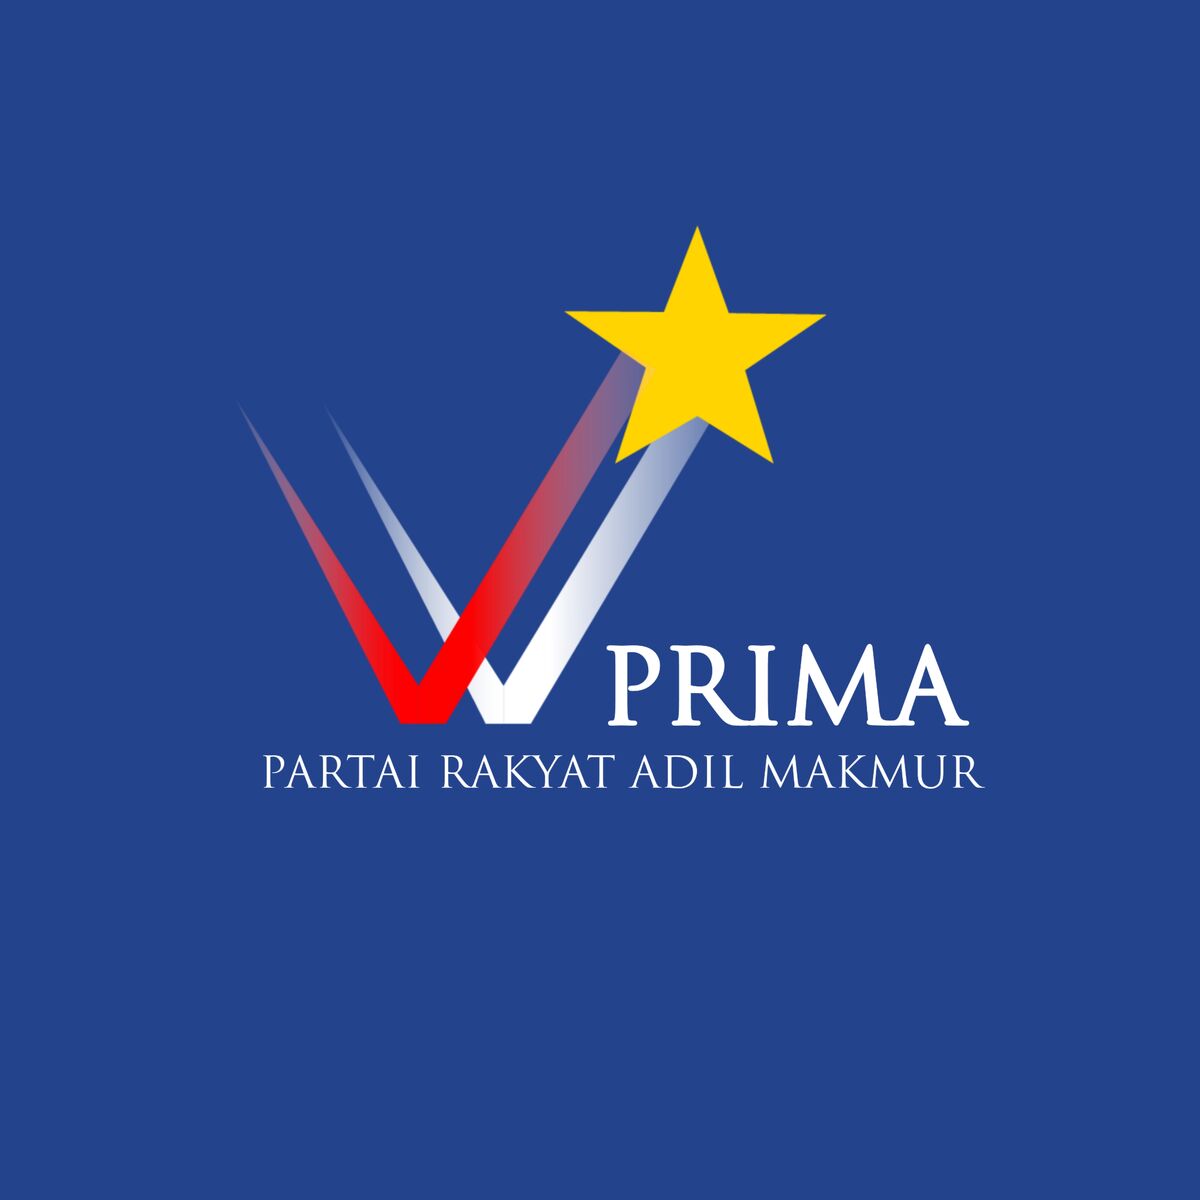 Partai Rakyat Adil Makmur Logopedia Fandom 2754